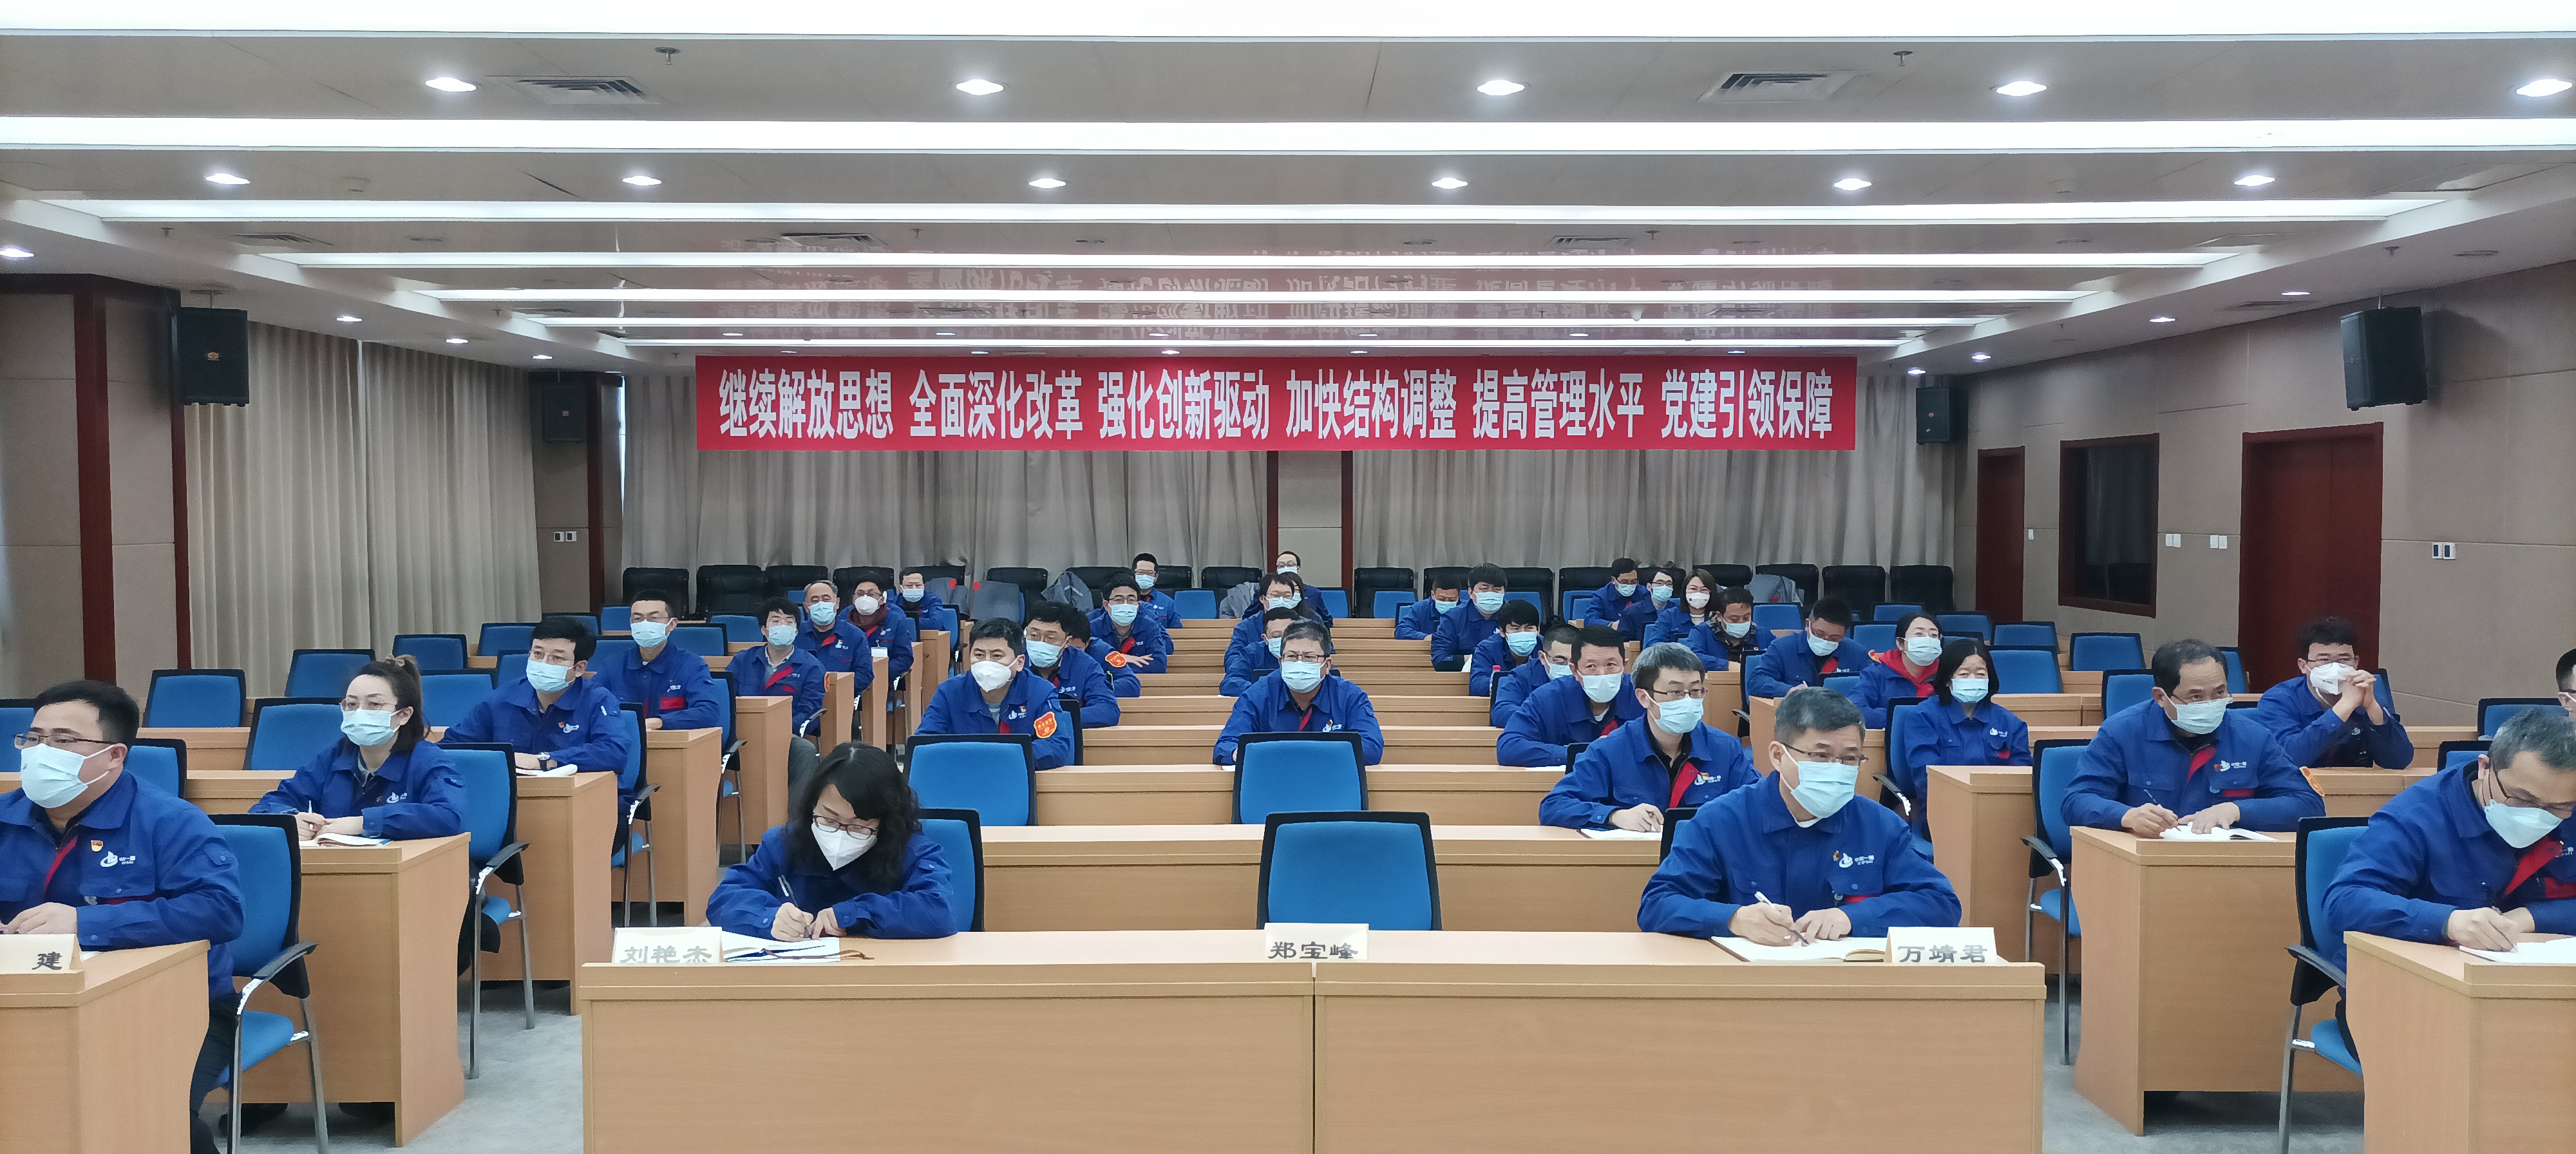 天津重工党委组织召开学习贯彻党的二十大精神宣讲会